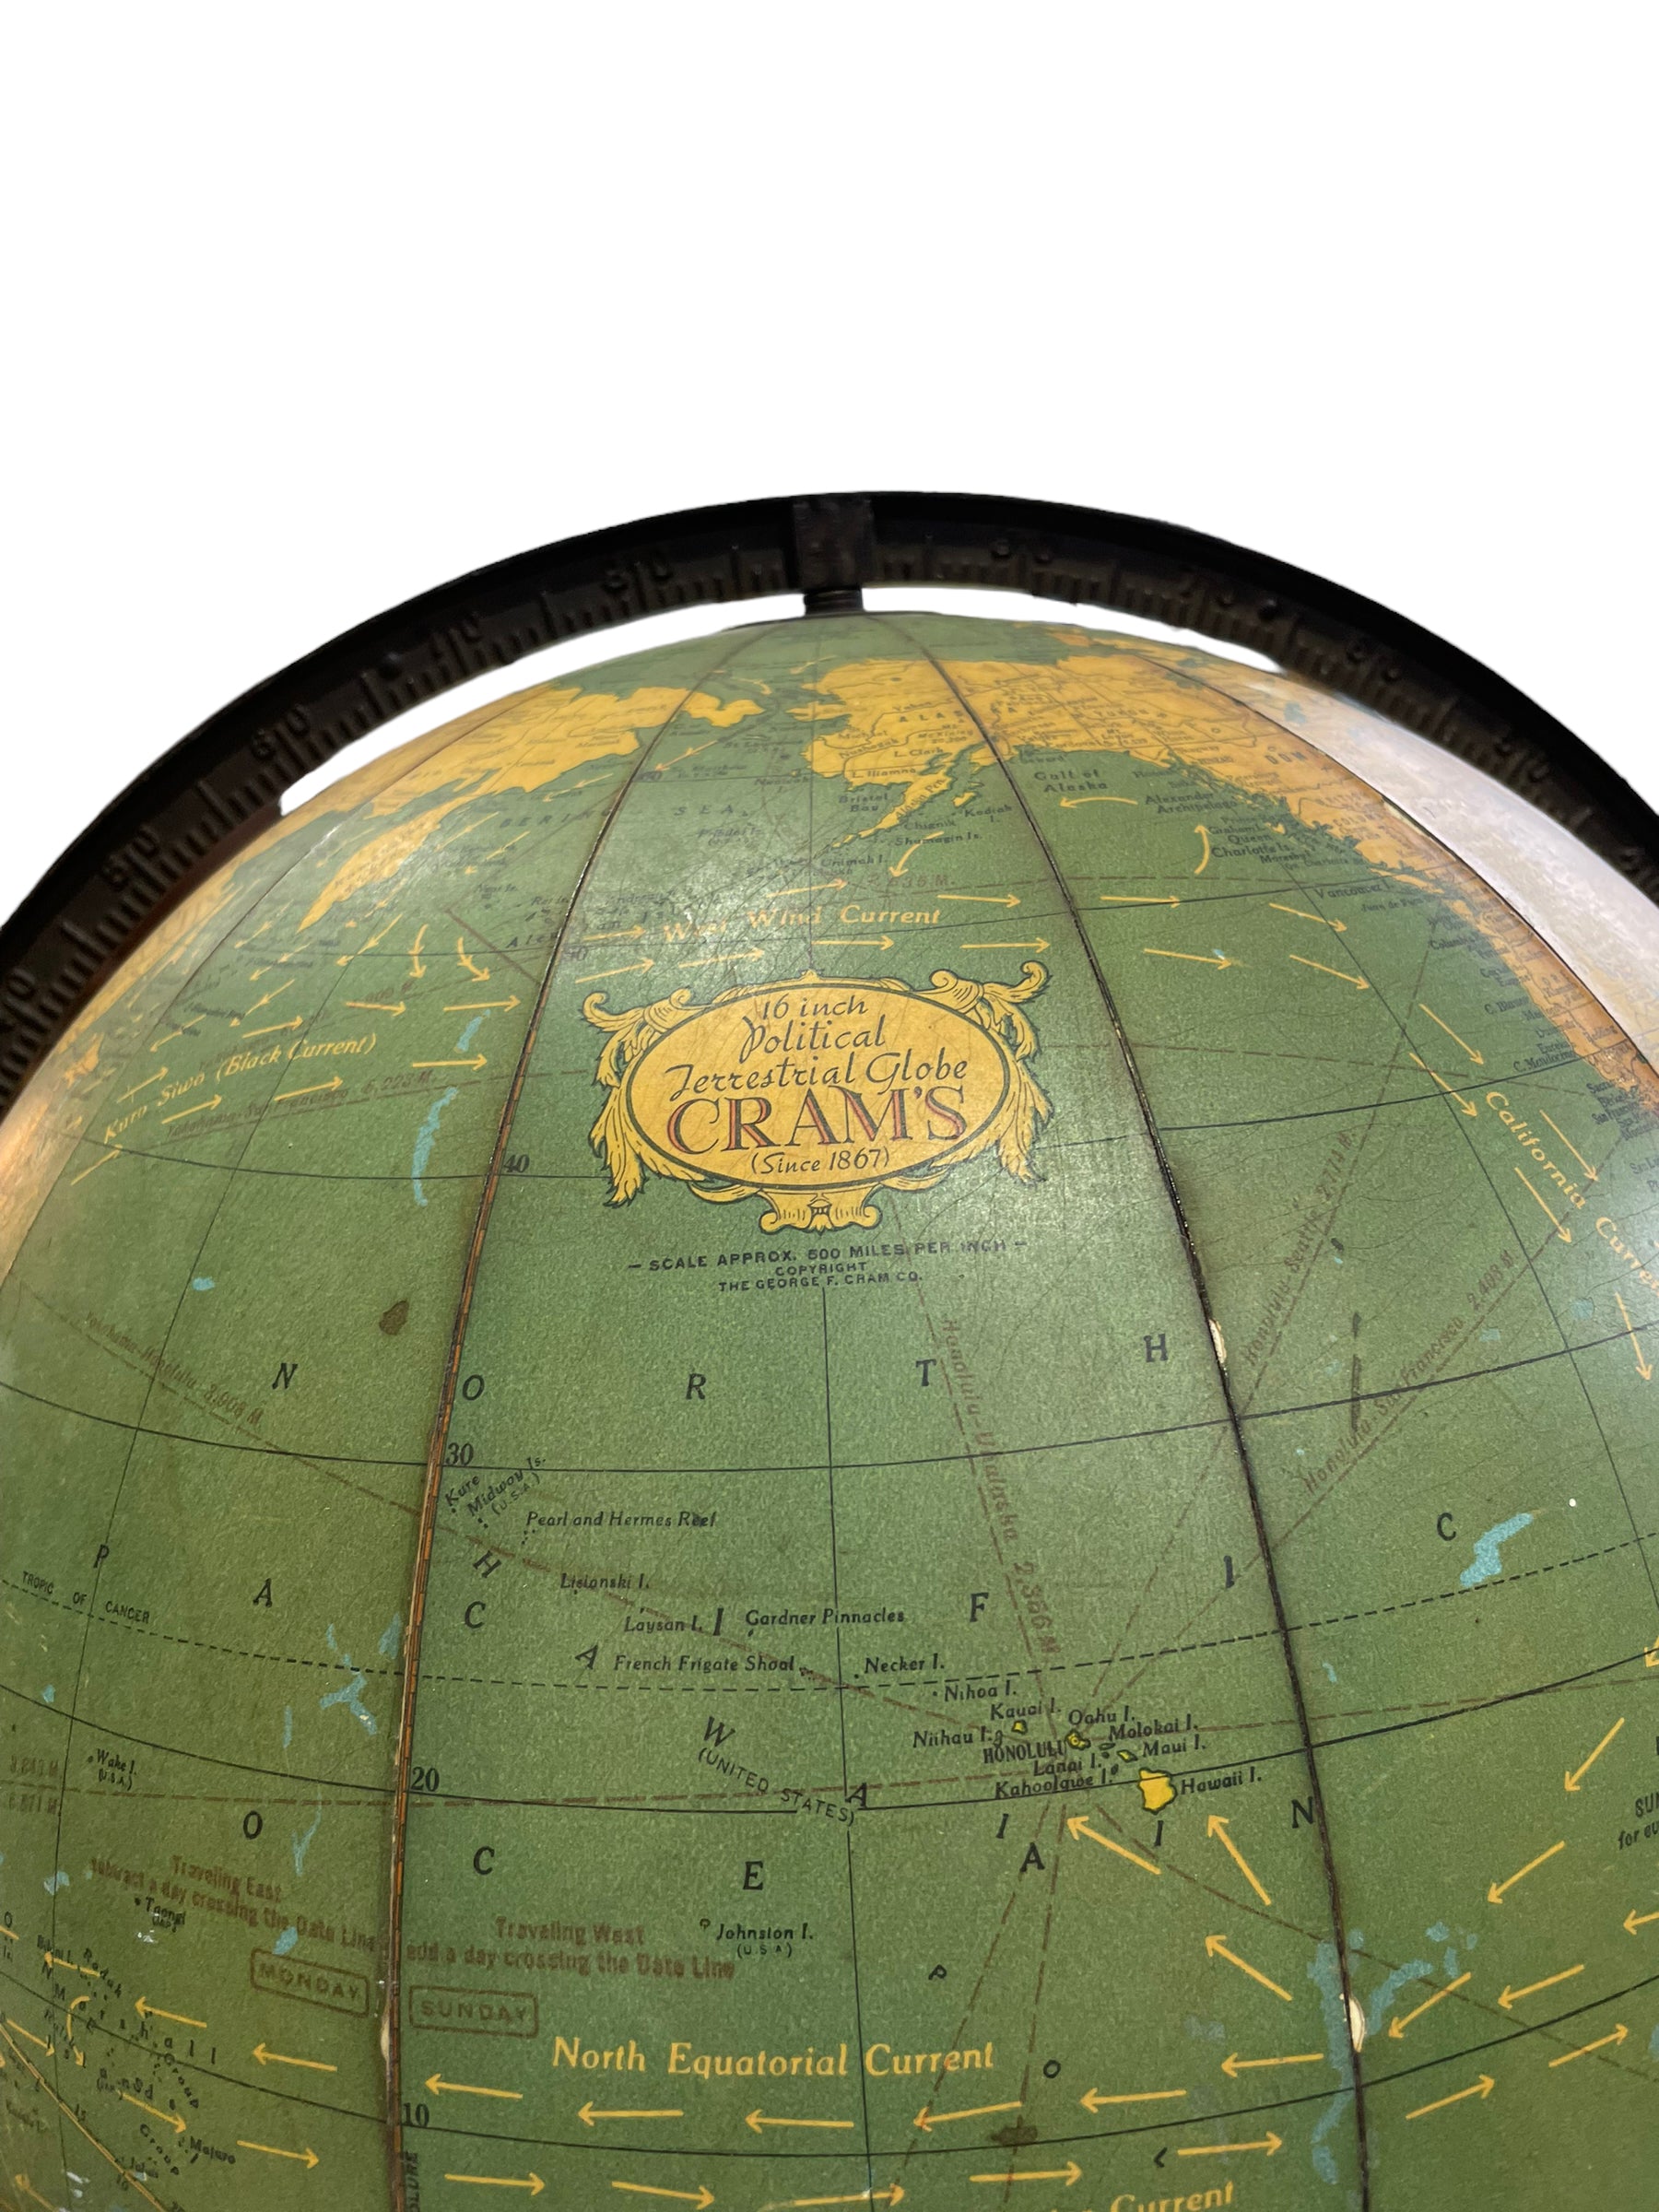  Globe Terrestre Politique Vintage de 16 pouces par Cram's